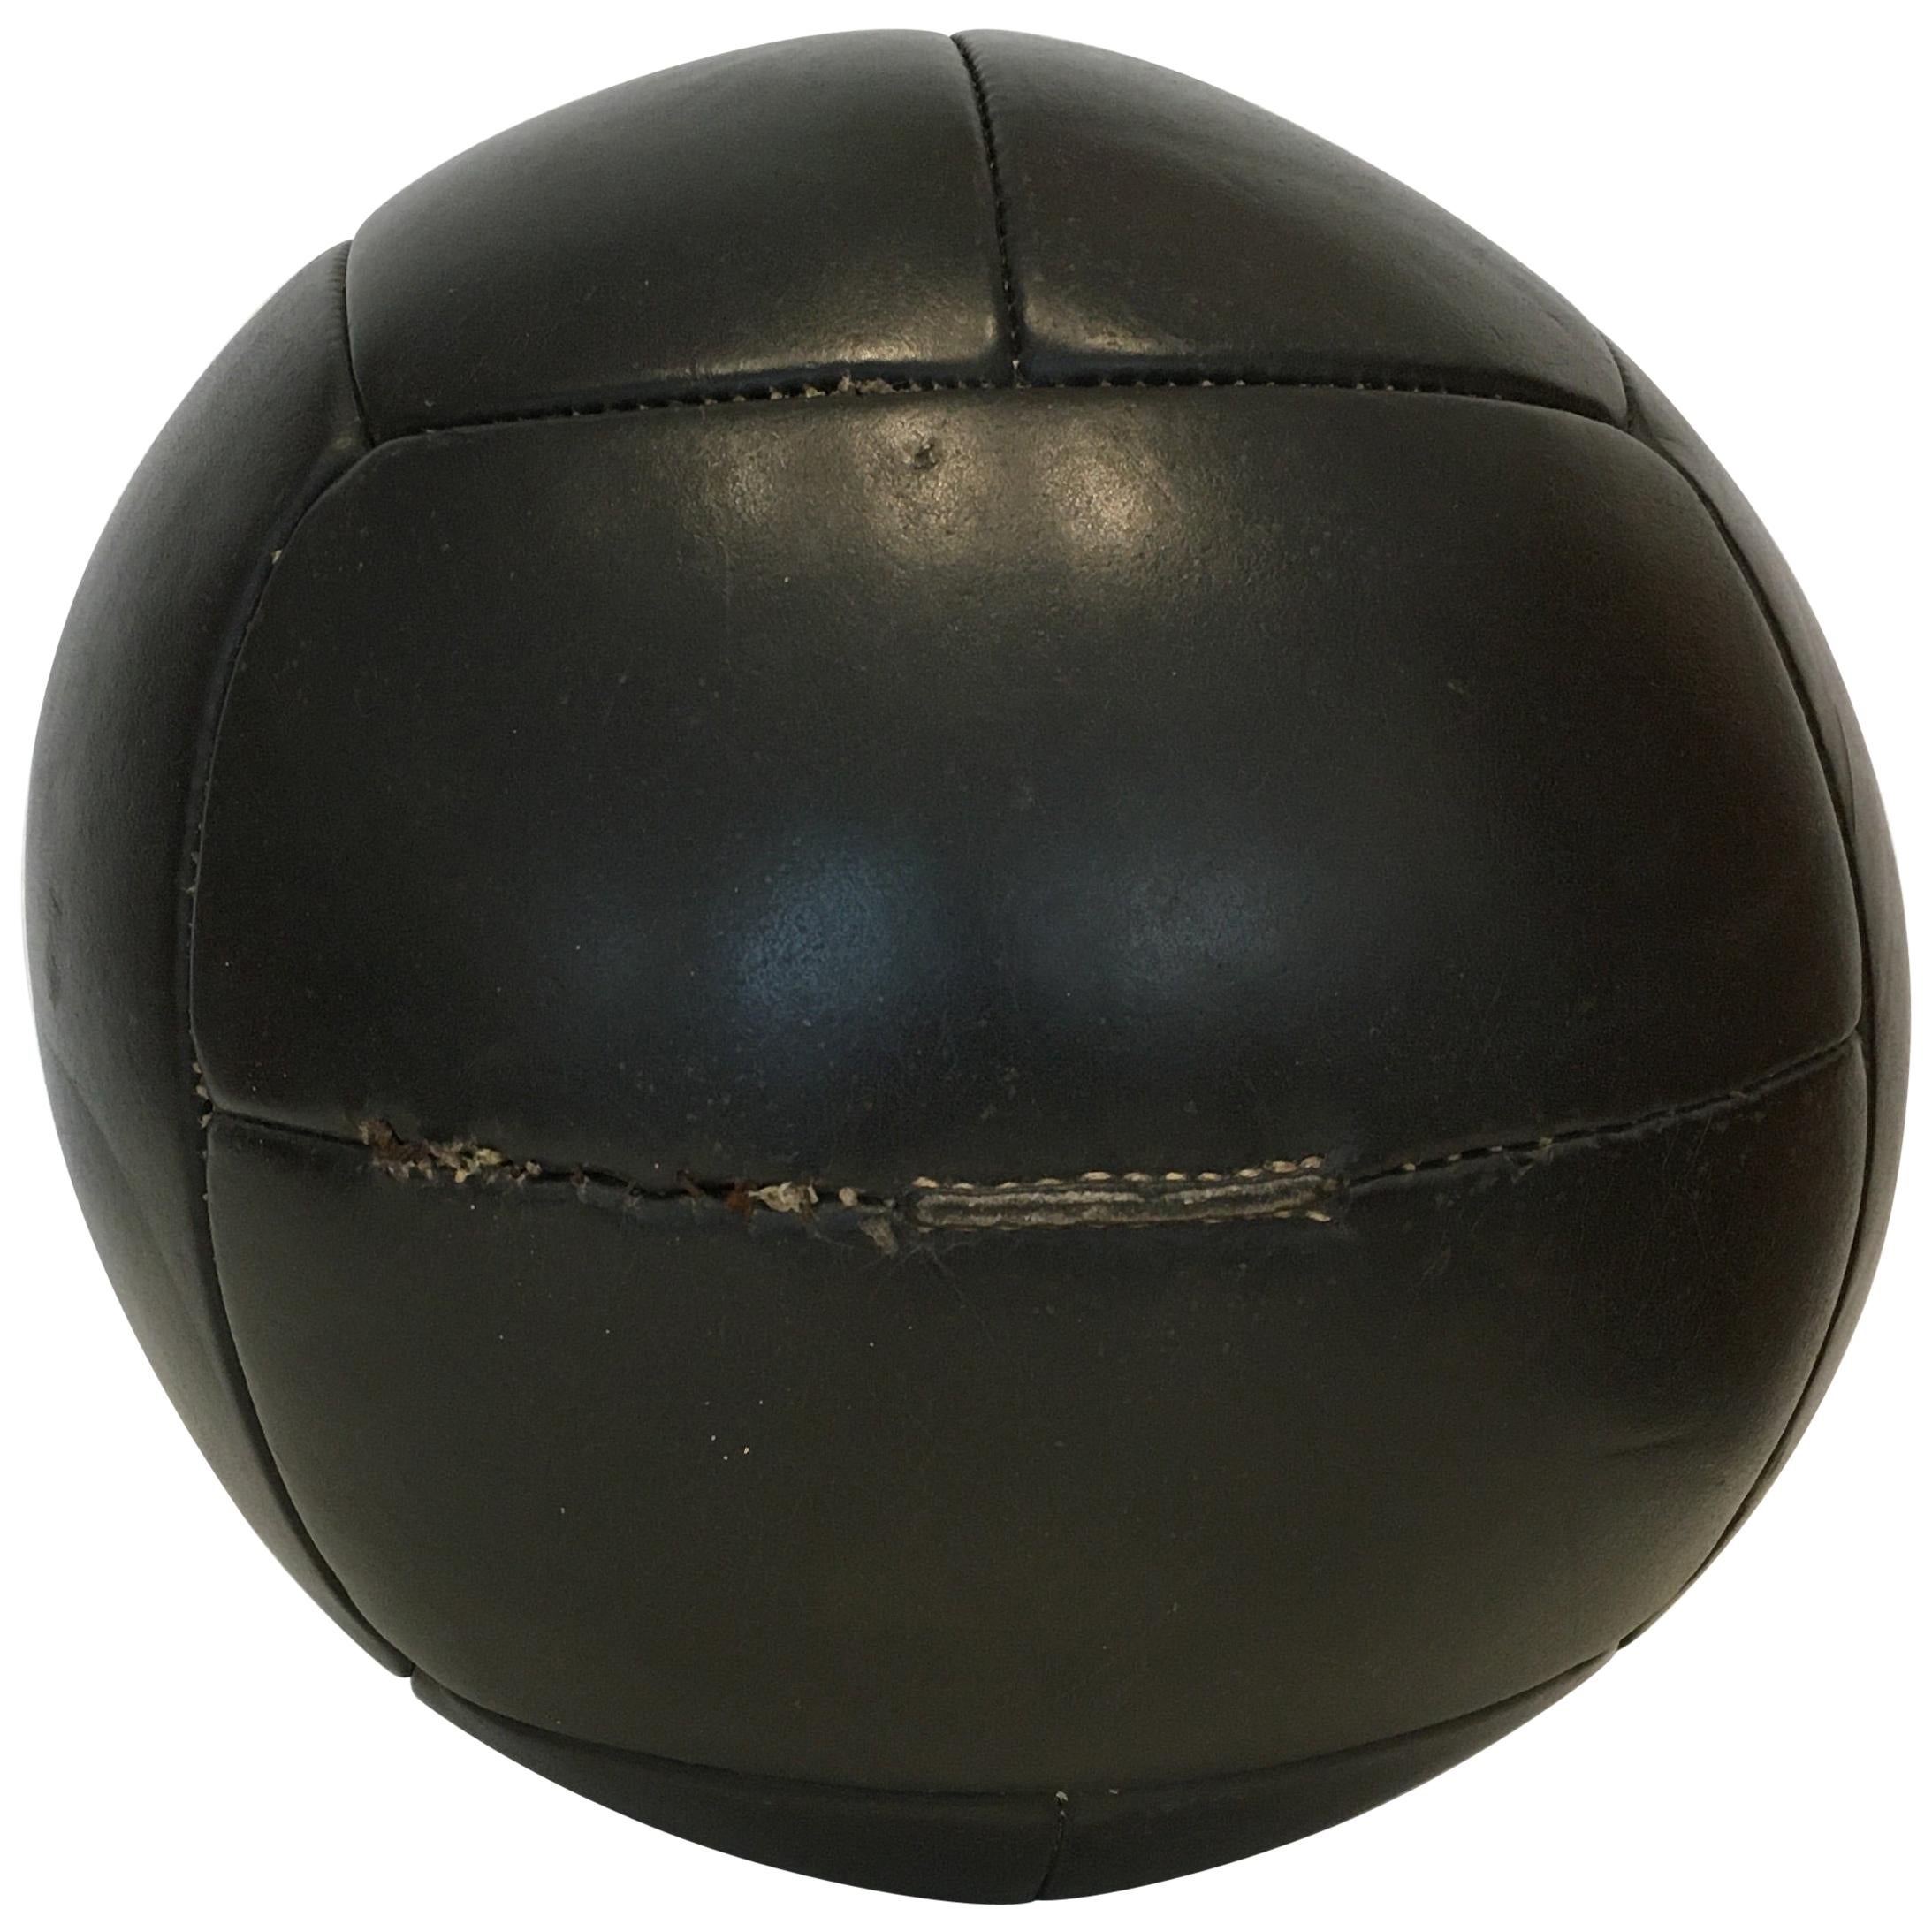 Vintage Black Leather Medicine Ball, 4kg, 1930s